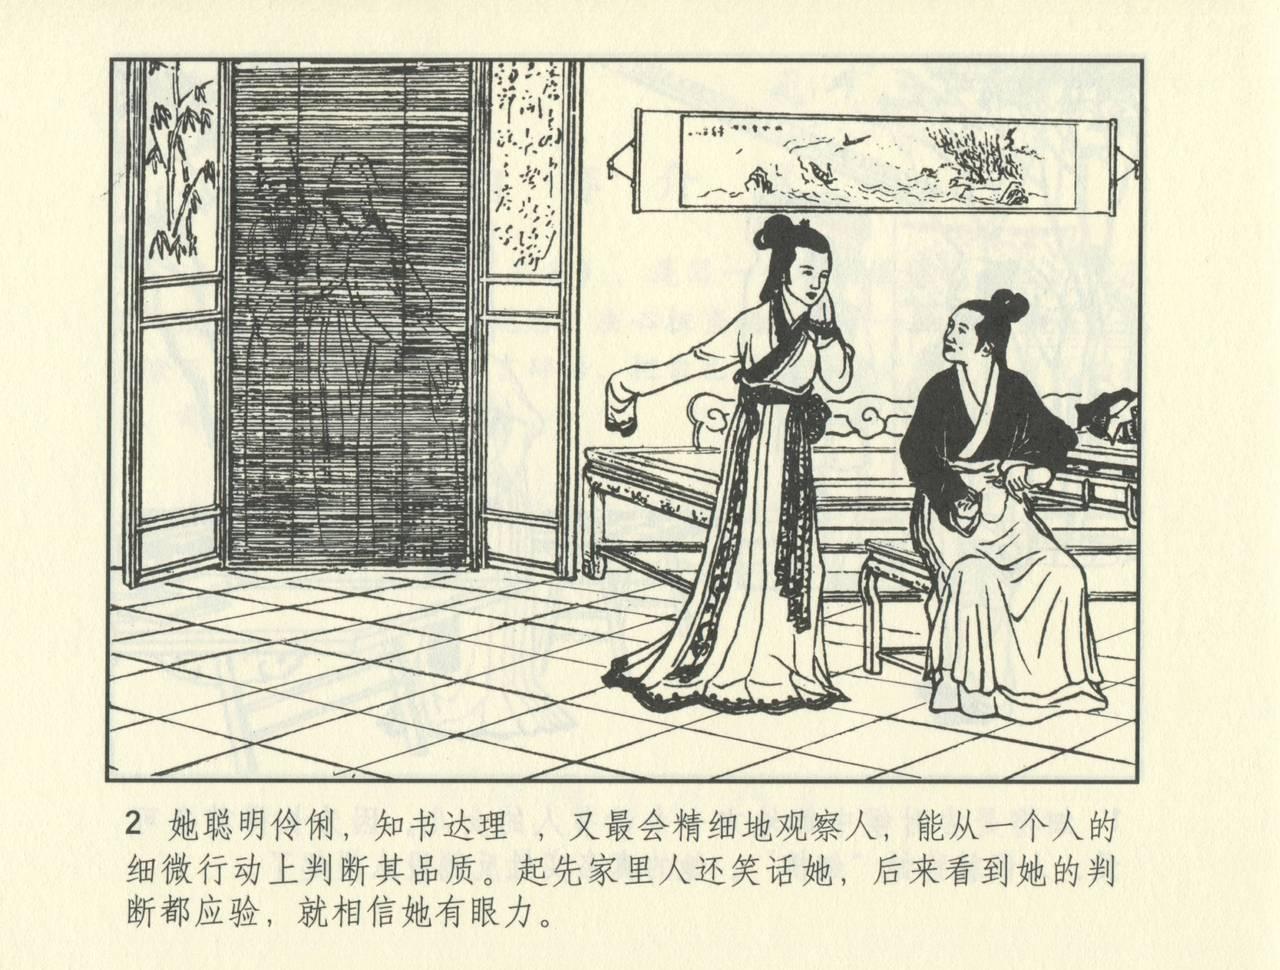 聊斋志异 张玮等绘 天津人民美术出版社 卷二十一 ~ 三十 474